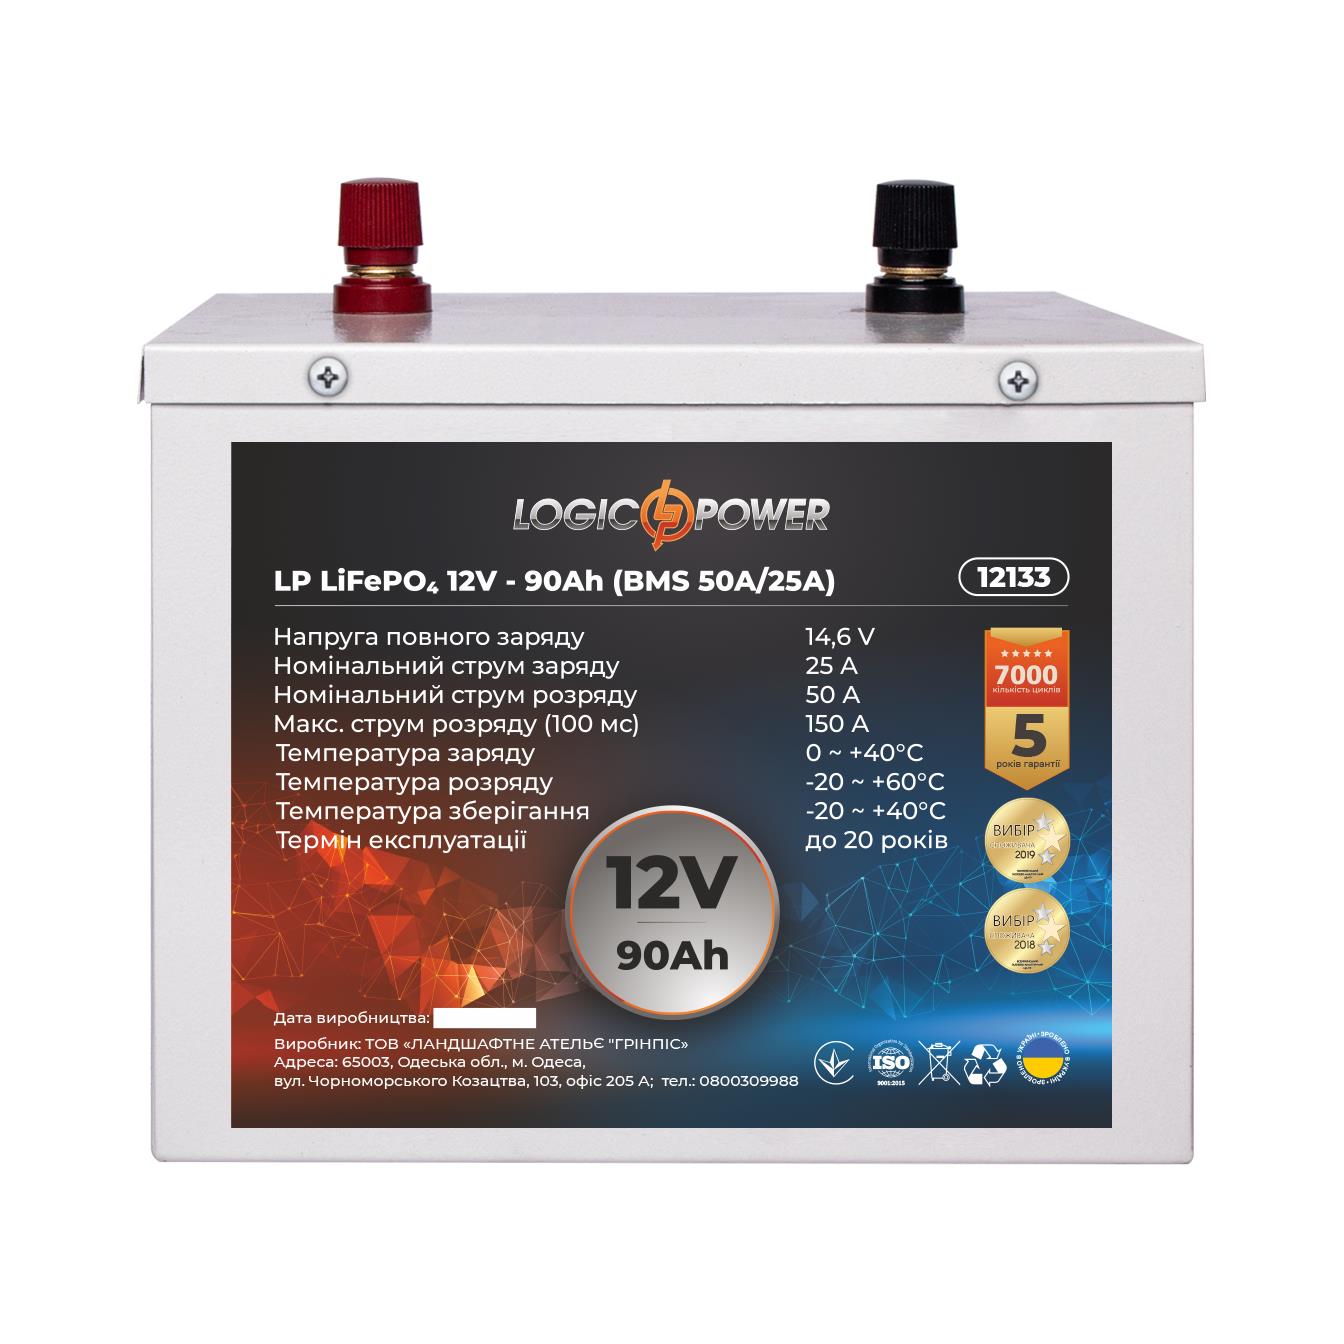 Аккумулятор литий-железо-фосфатный LogicPower LP LiFePO4 12V - 90 Ah (BMS 50A/25A) металл (12133) в интернет-магазине, главное фото